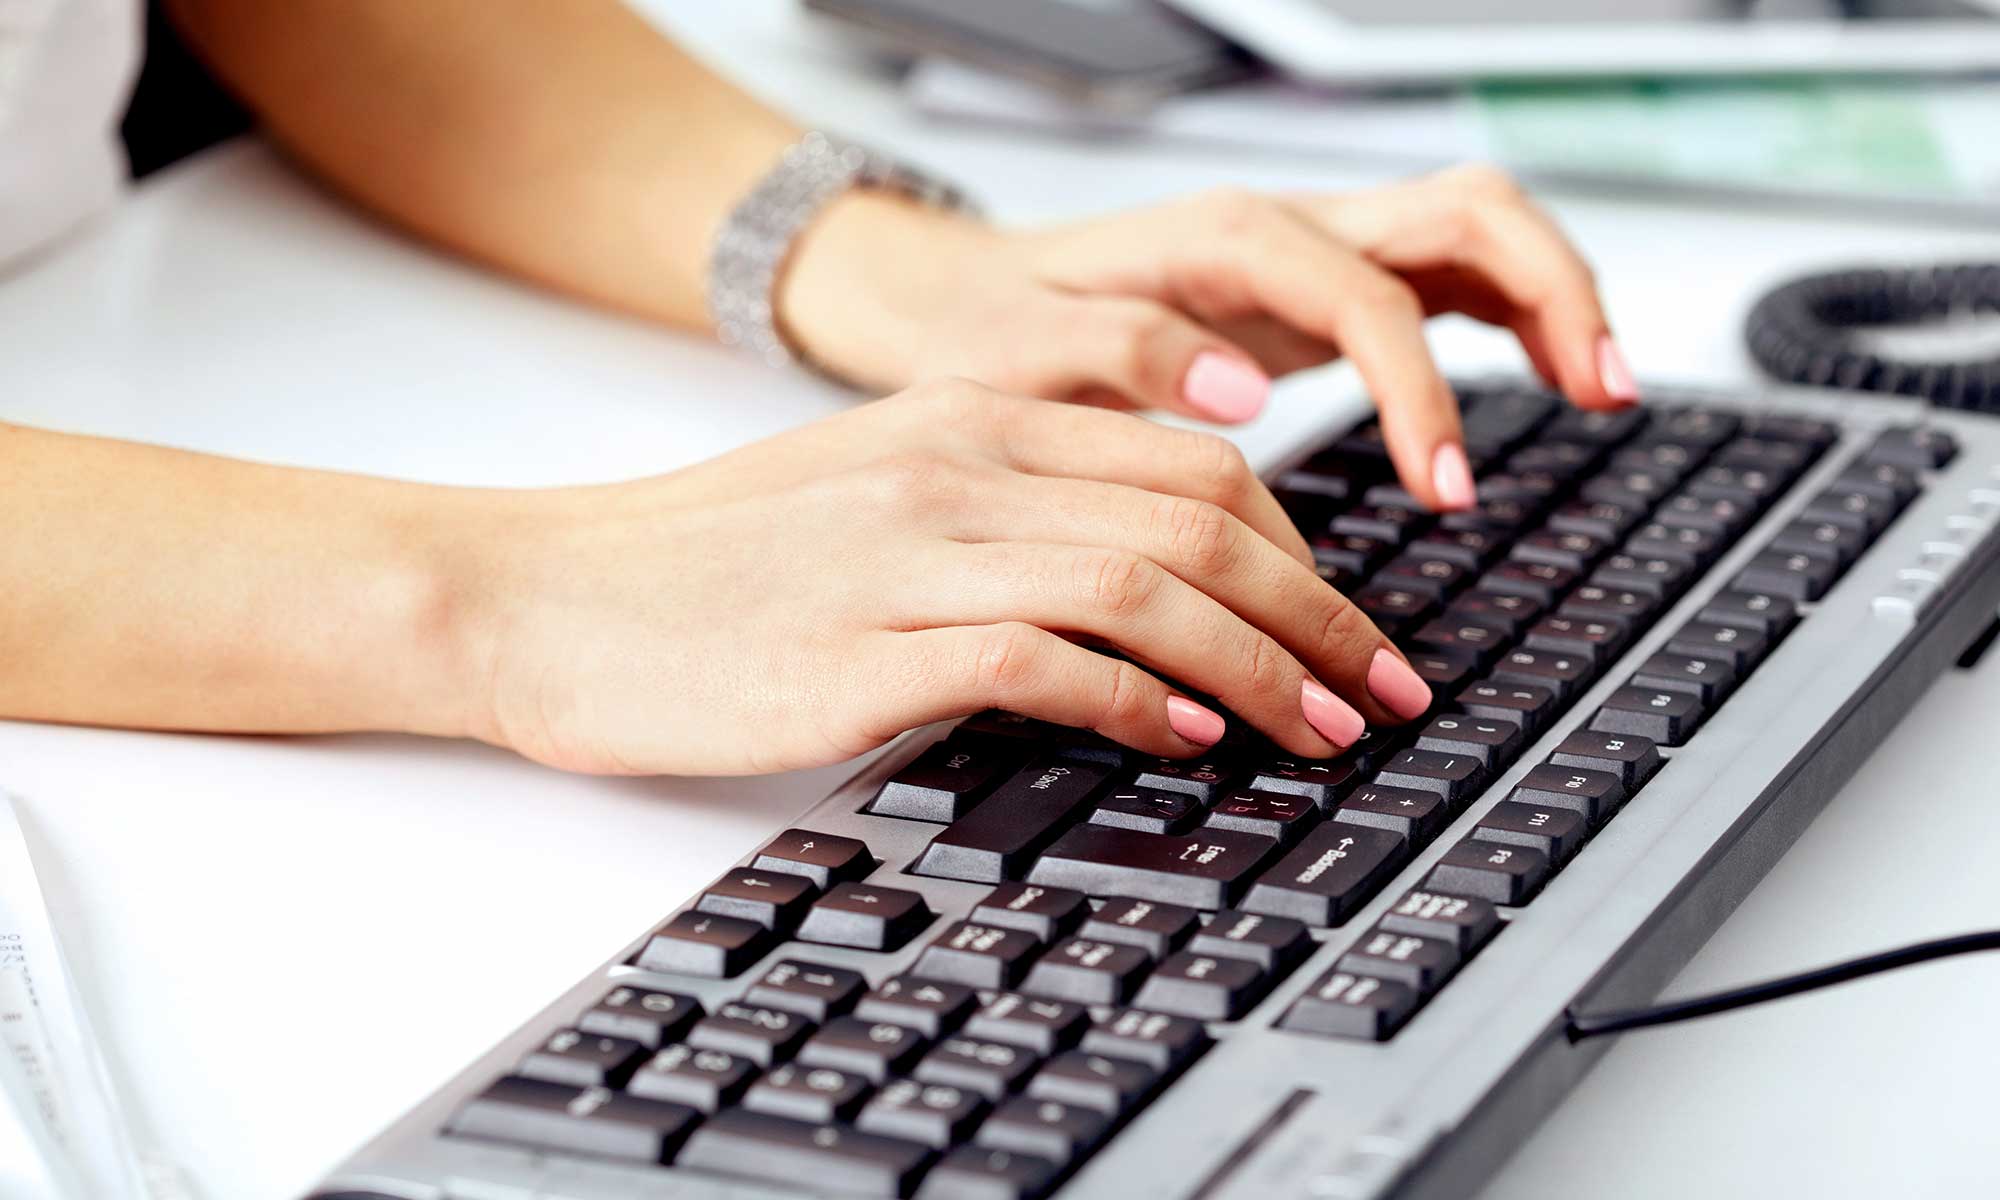 Компьютер press. Руки на клавиатуре. Женские руки на клавиатуре. Человек печатающий на клавиатуре. Человек печатает на клавиатуре.